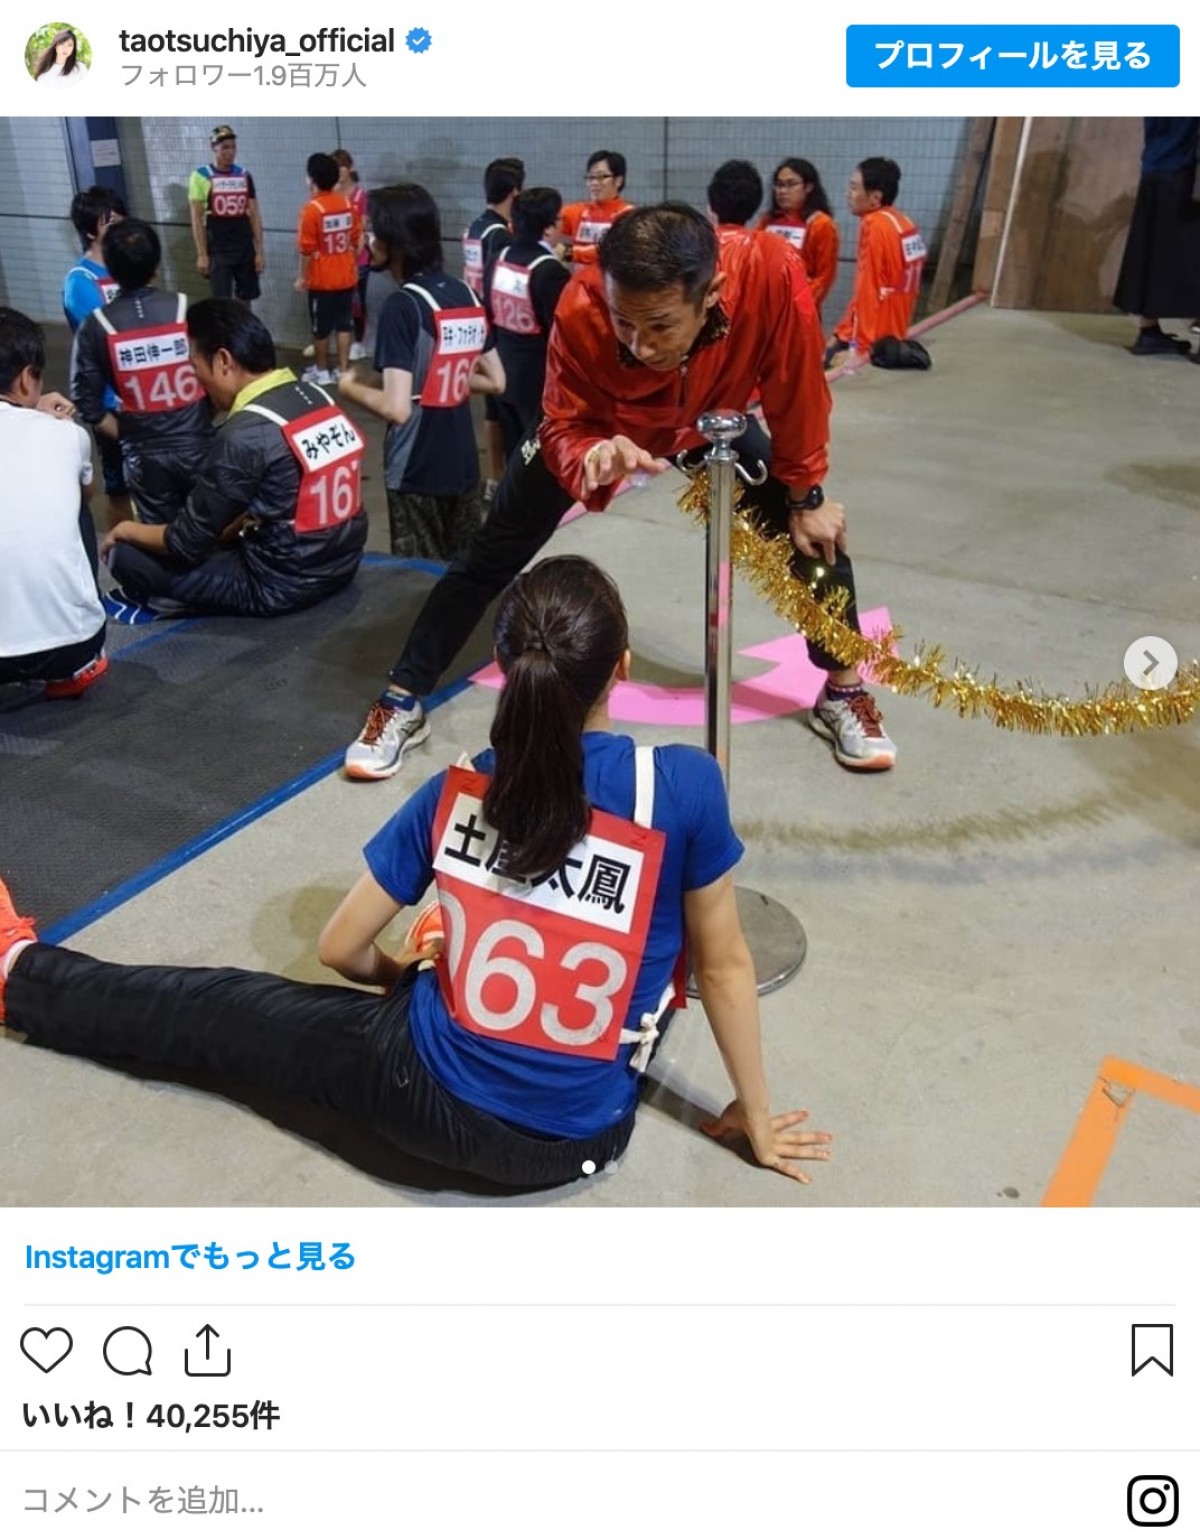 土屋太鳳「2016年赤坂ミニマラソン」の写真披露 『オールスター感謝祭』コロナ延期を受けて